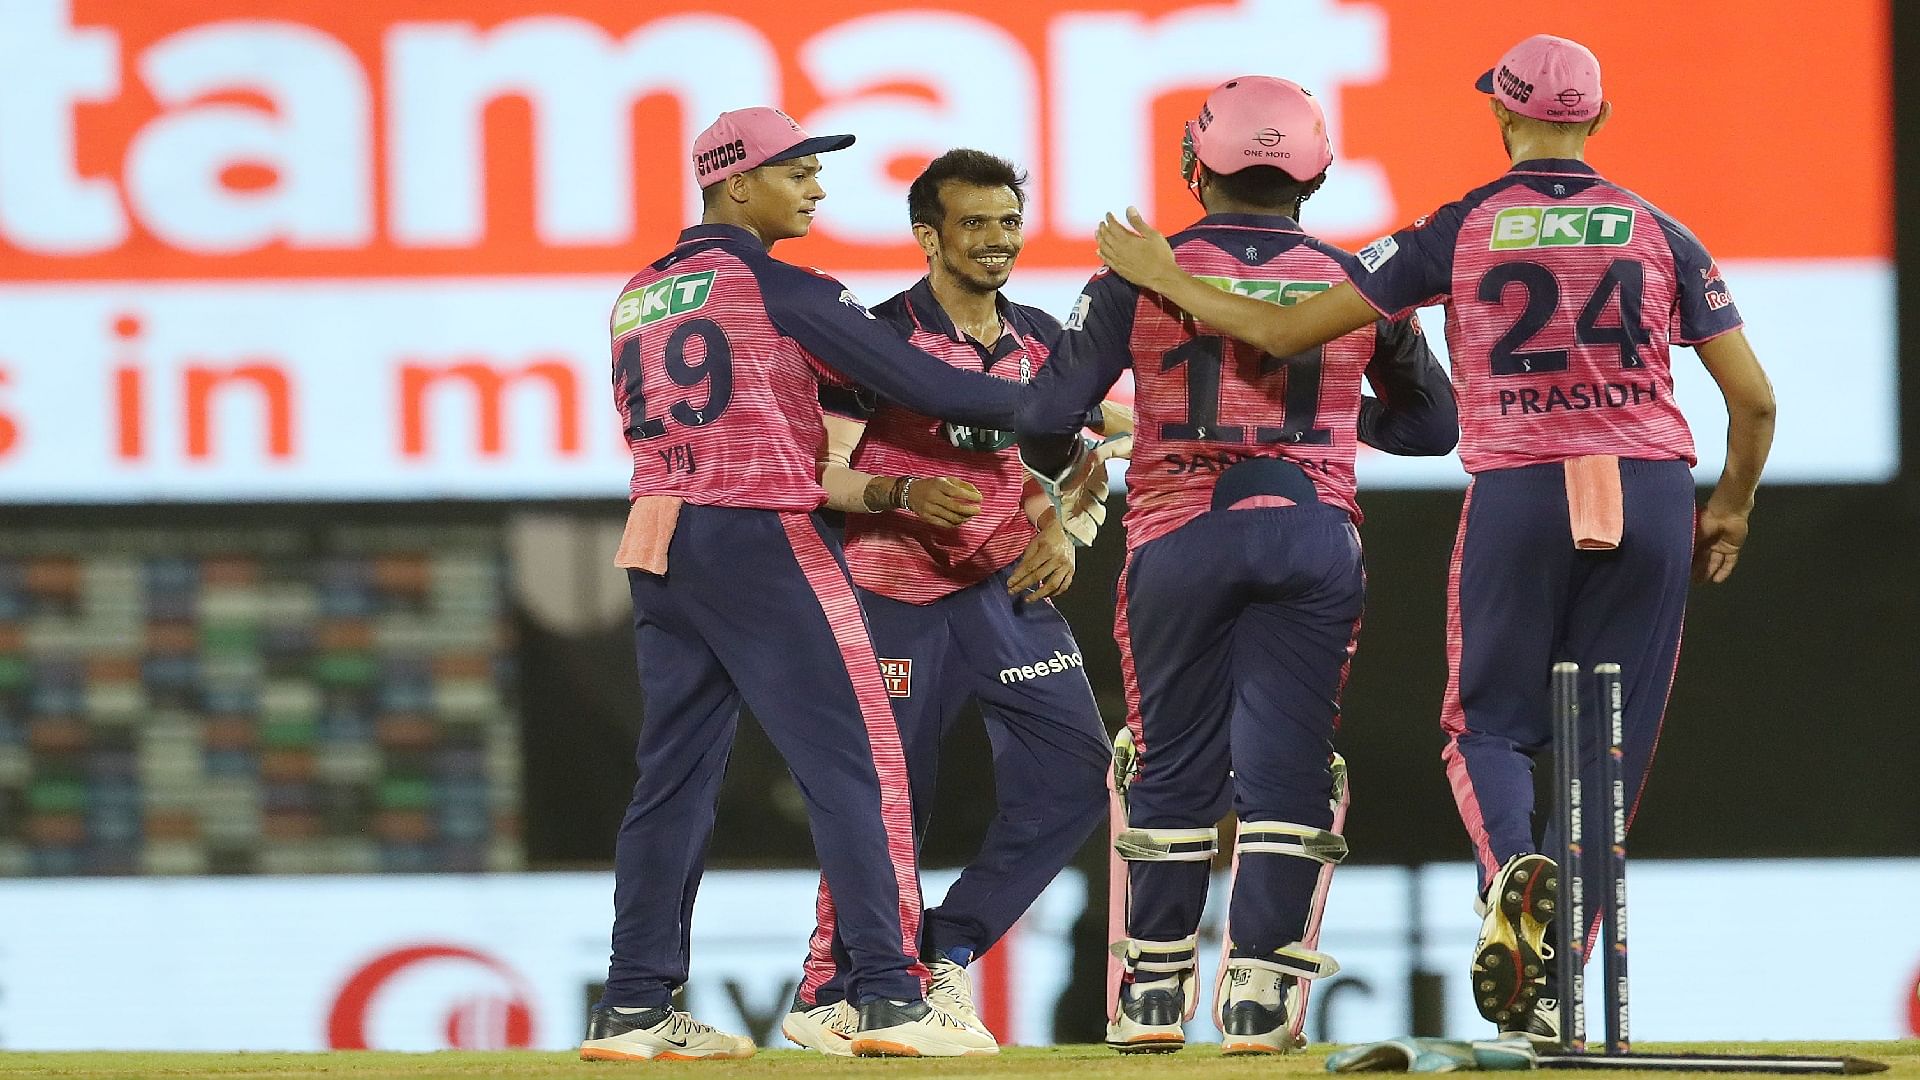 Lsg Vs Rr: लखनऊ के बल्लेबाज फिर फेल, अब राजस्थान ने हराया, रोमांचक हुई प्लेऑफ की जंग - Cricket News In Hindi